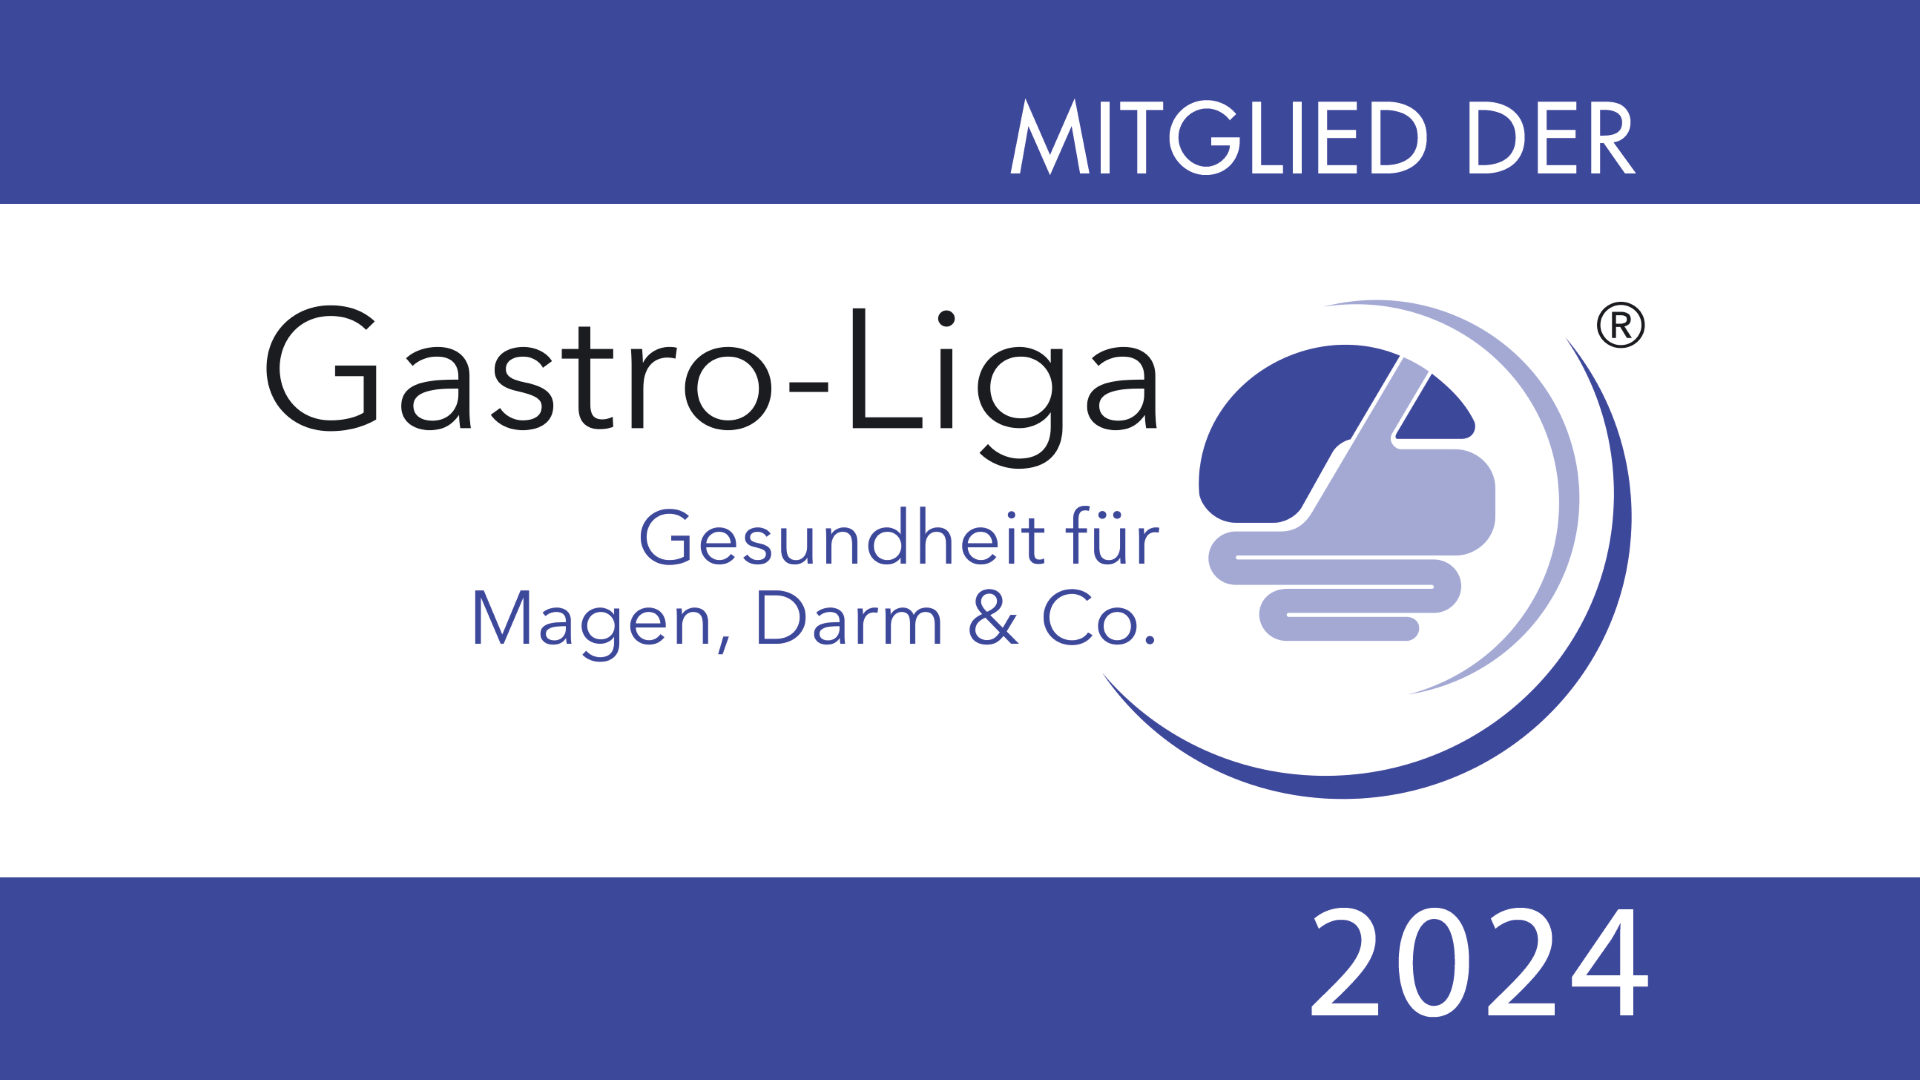 Nestlé Deutschland AG, Geschäftsbereich Nestlé Health Science ist jetzt Mitglied der Gastro-Liga